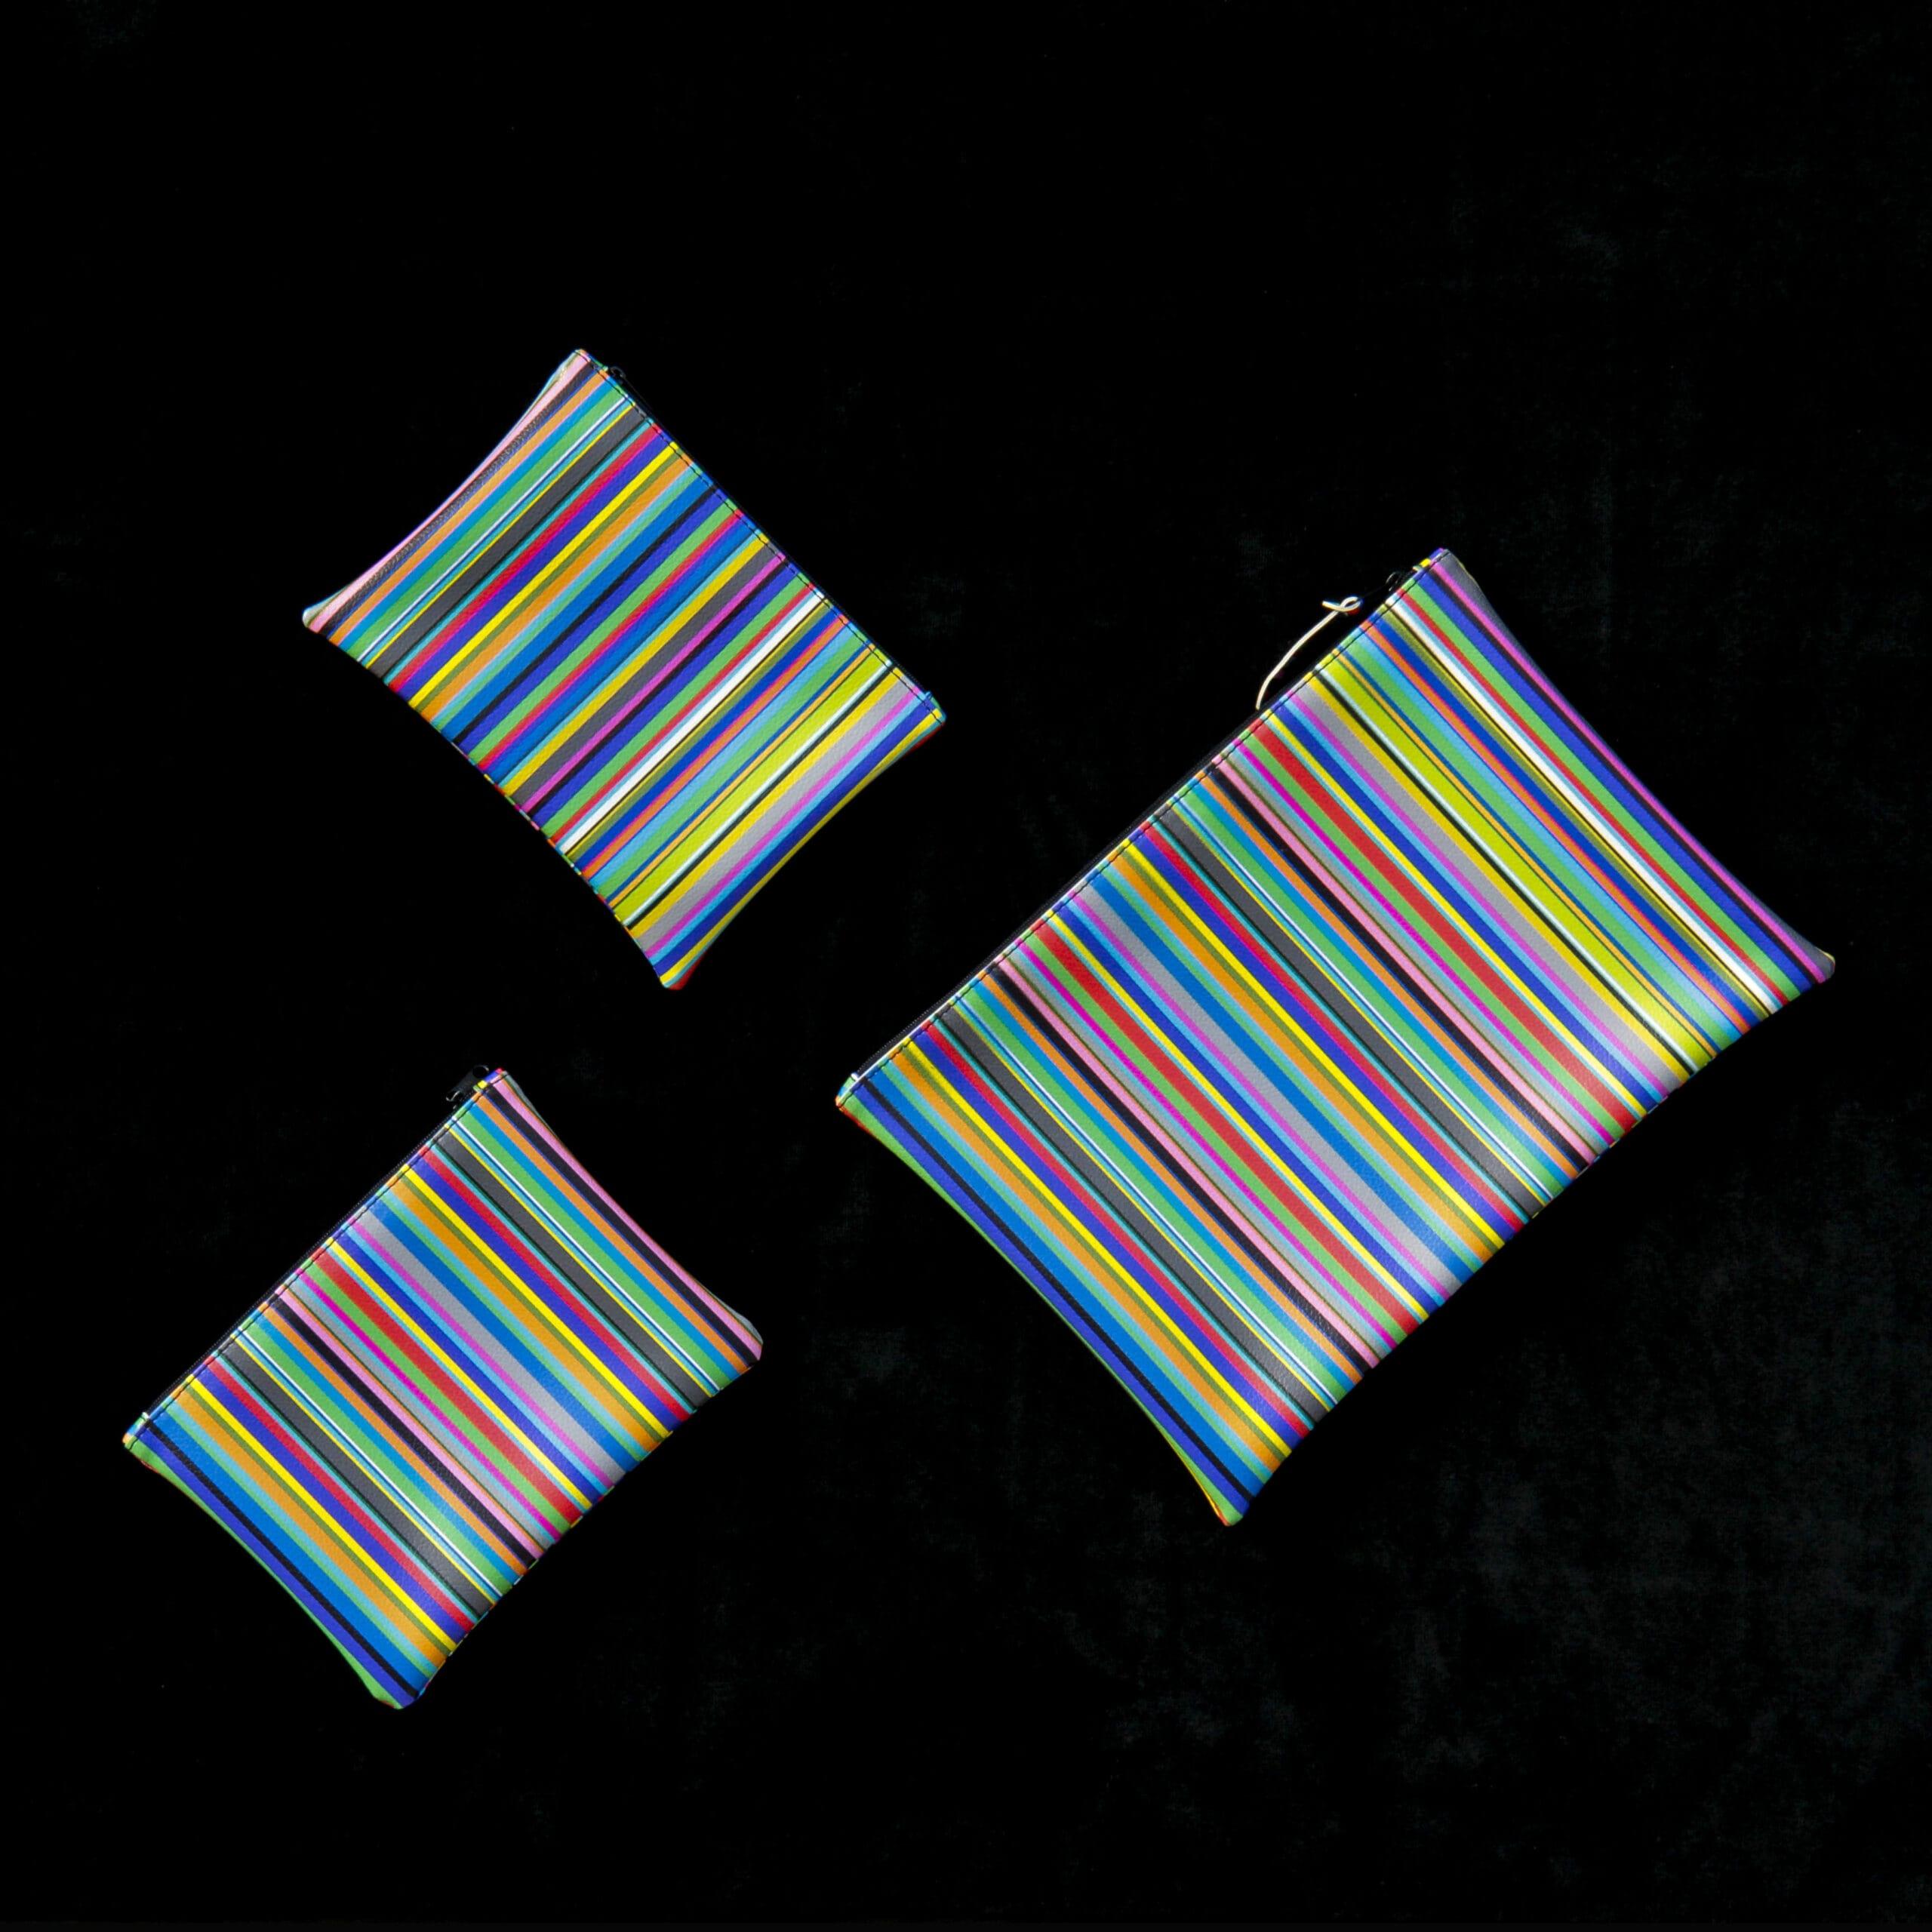 tre astucci di diverse dimensioni, di forma rettangolare, realizzati con tessuto a righe colorate disposti uno accanto all'atro.